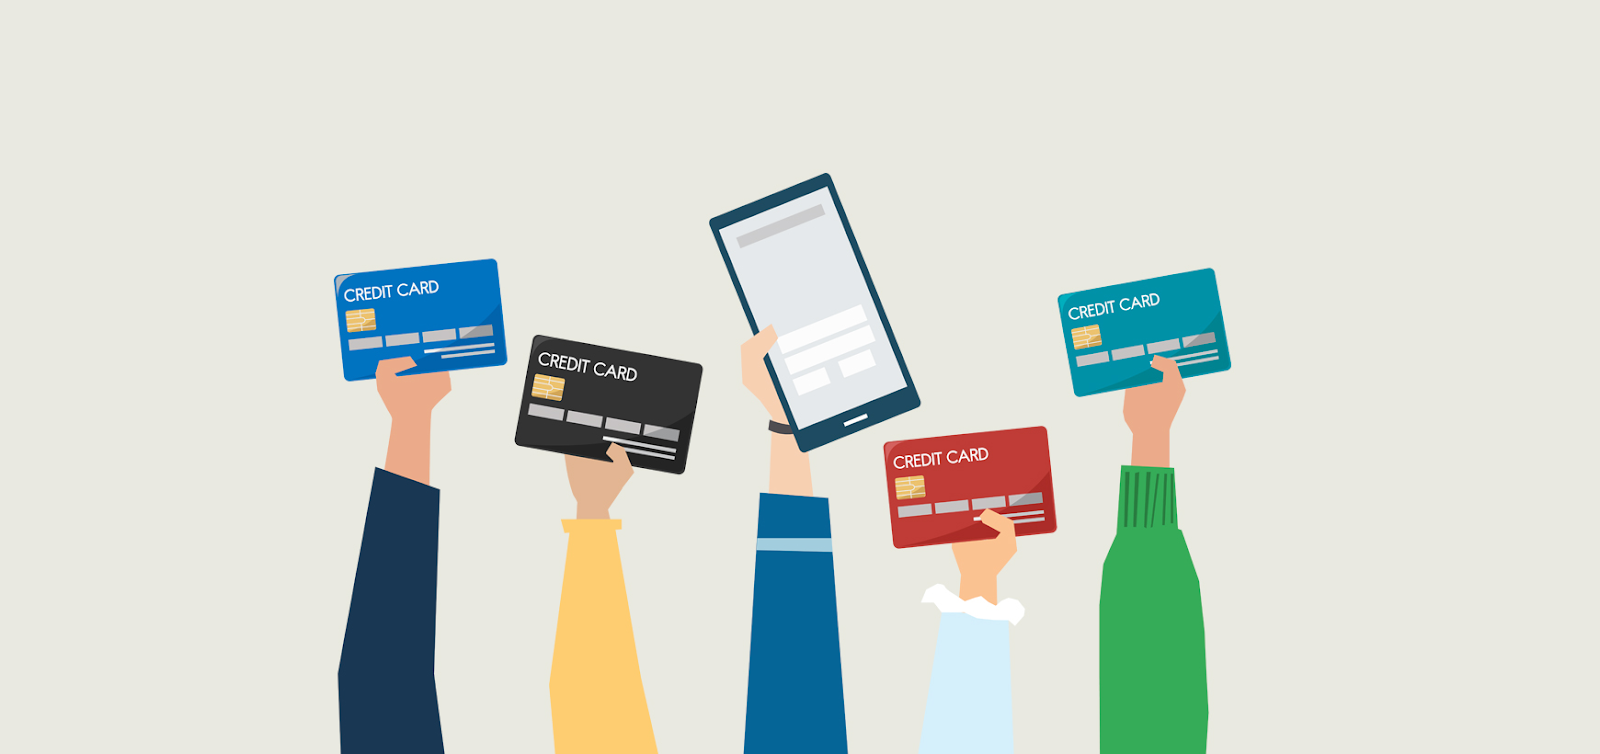 Một số đối tượng mục tiêu của phương thức thanh toán bằng thẻ tín dụng